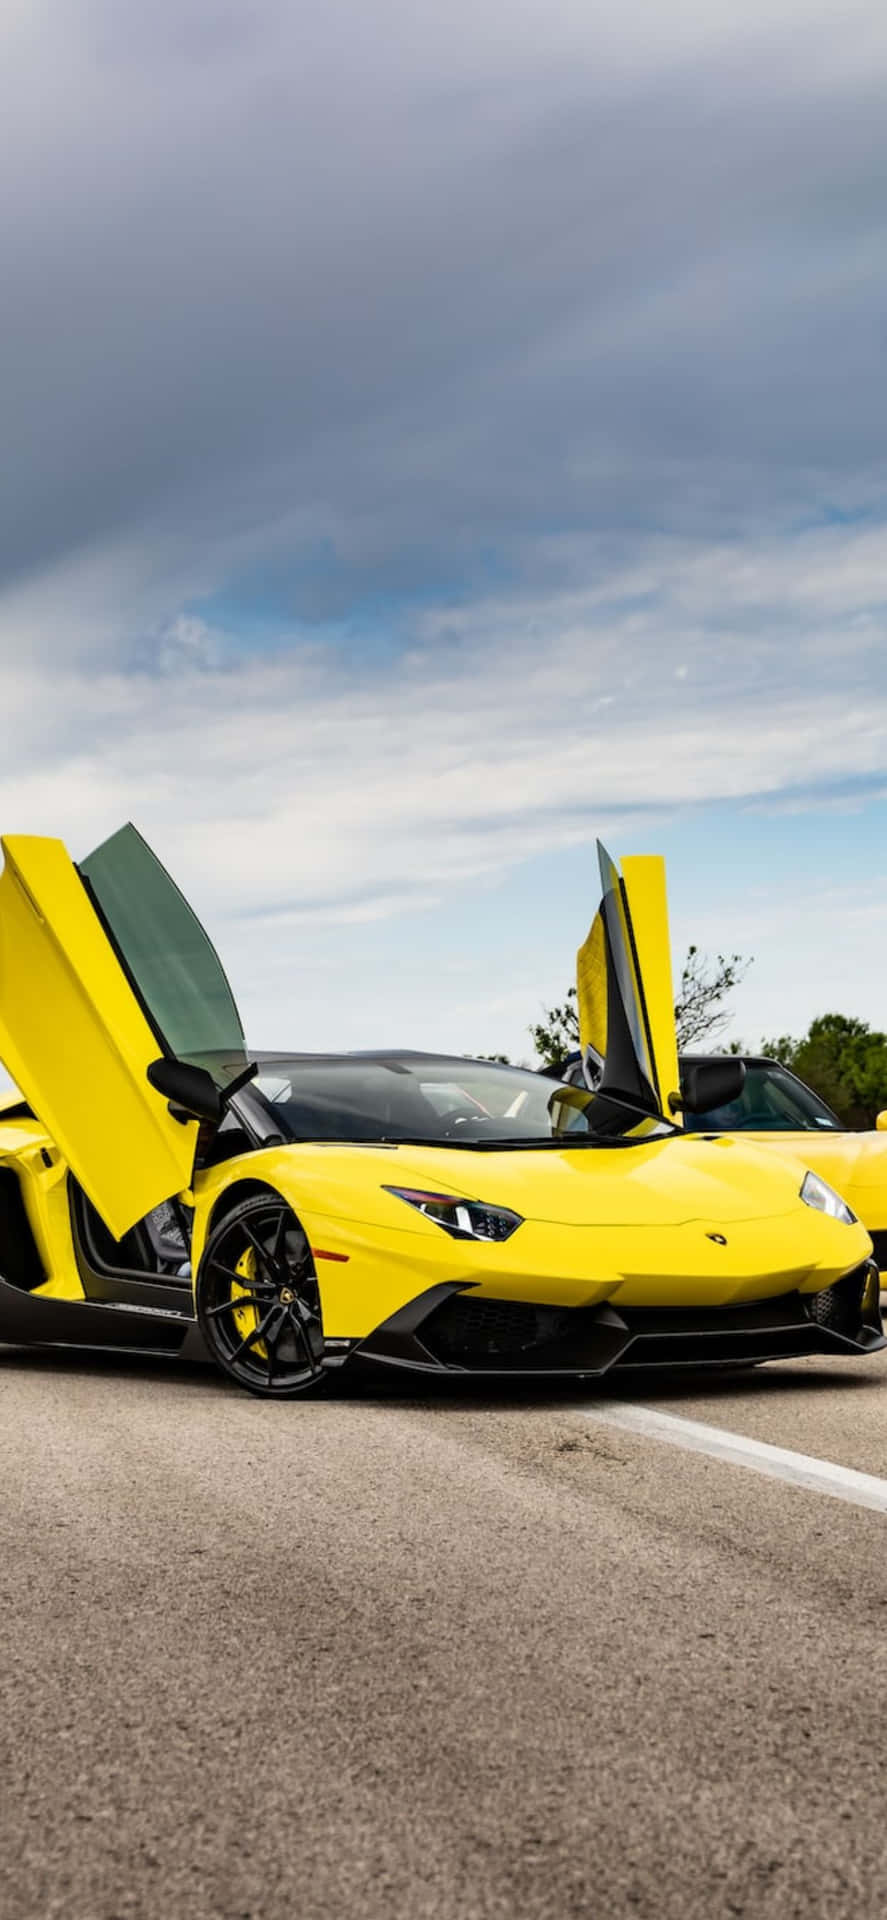 Iphonexs Max Lamborghini Aventador Yellow Car-bakgrund.